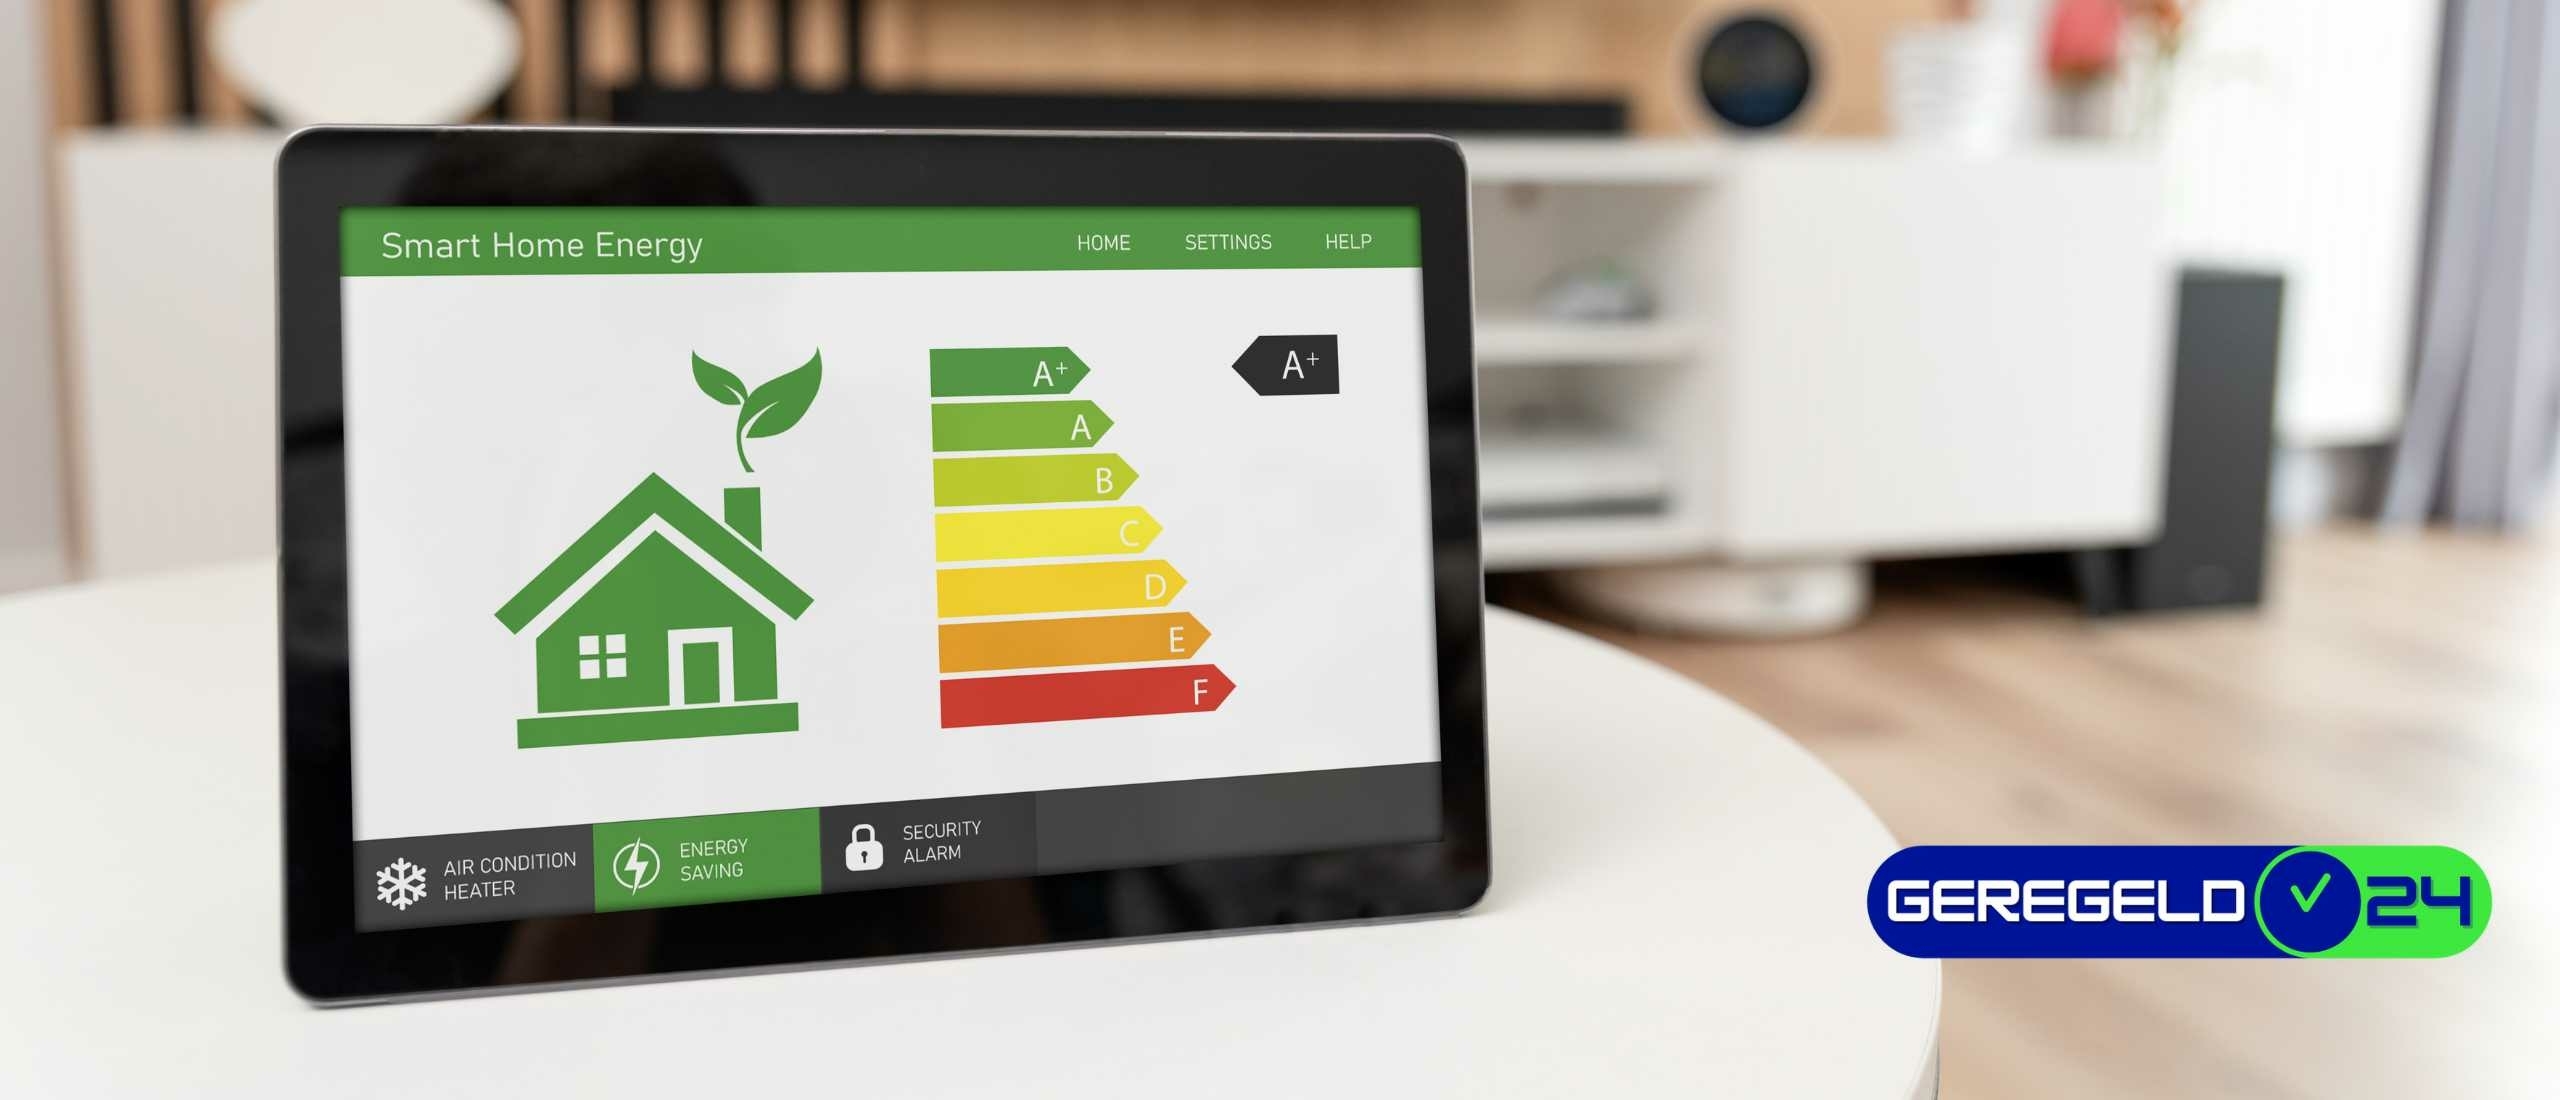 Hoe kun je het energielabel van je huis verbeteren voor de verkoop?